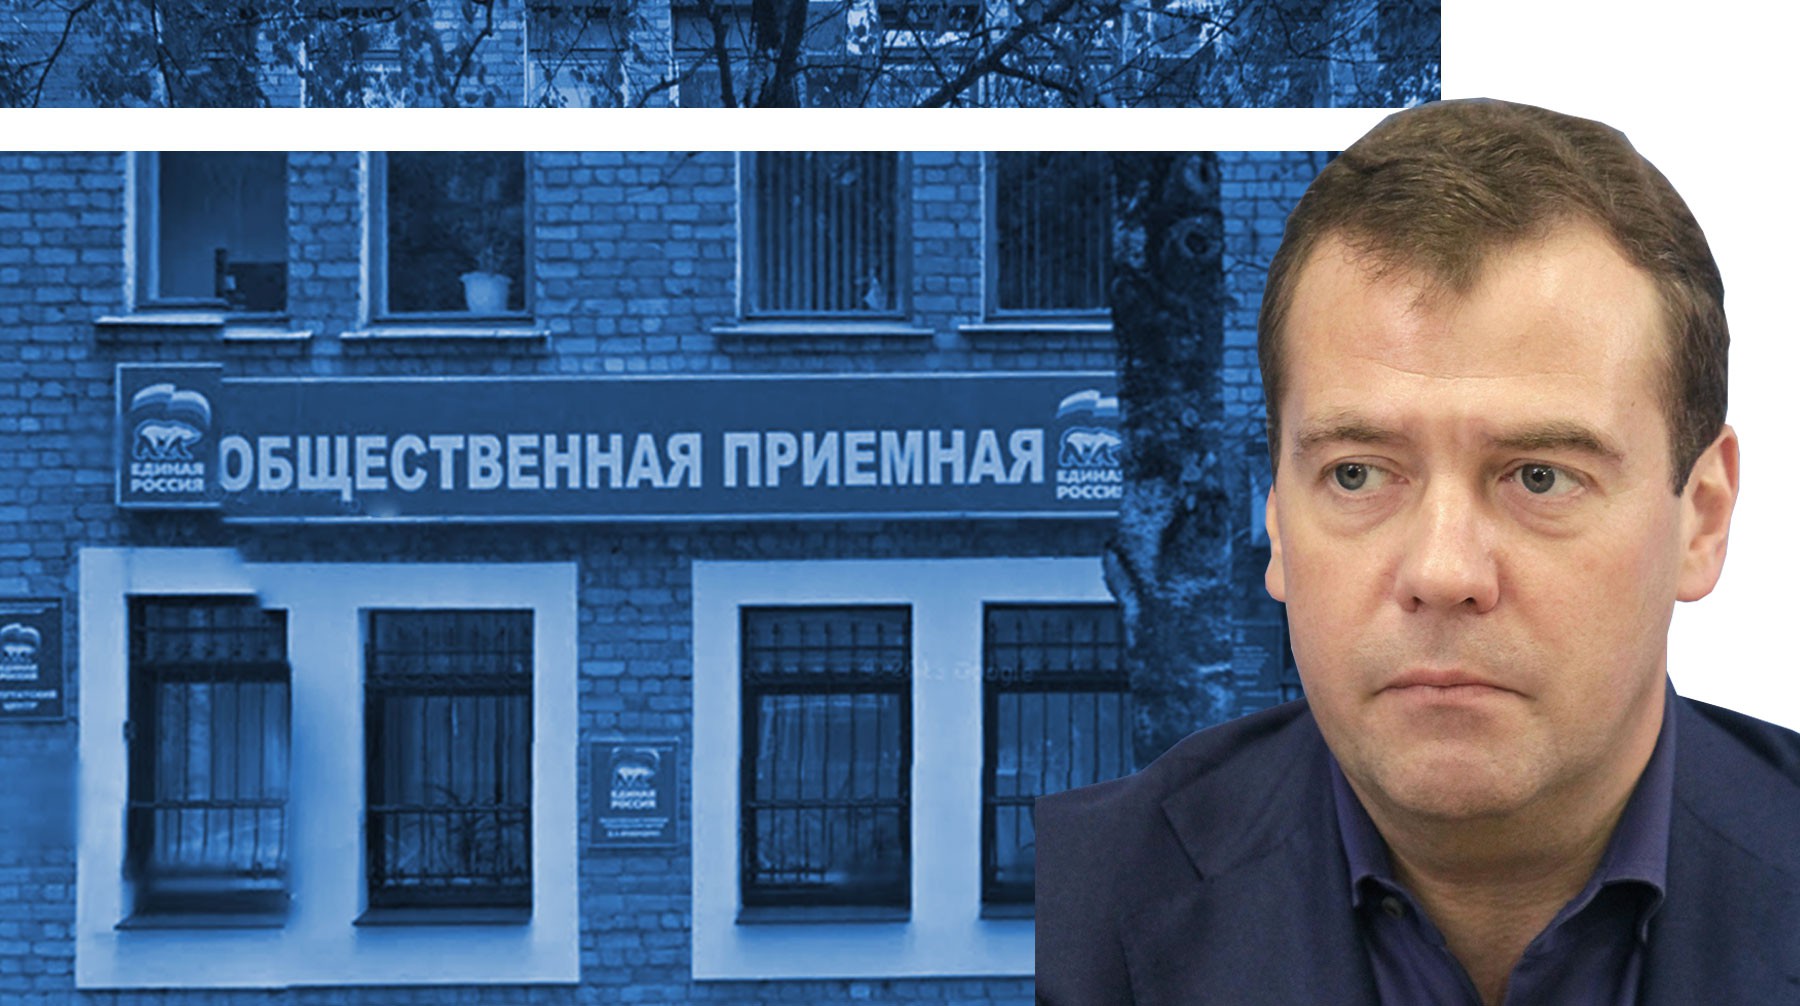 Dailystorm - «Отца родного заложили». Приемную Дмитрия Медведева в Брянске отдали под залог кредитов